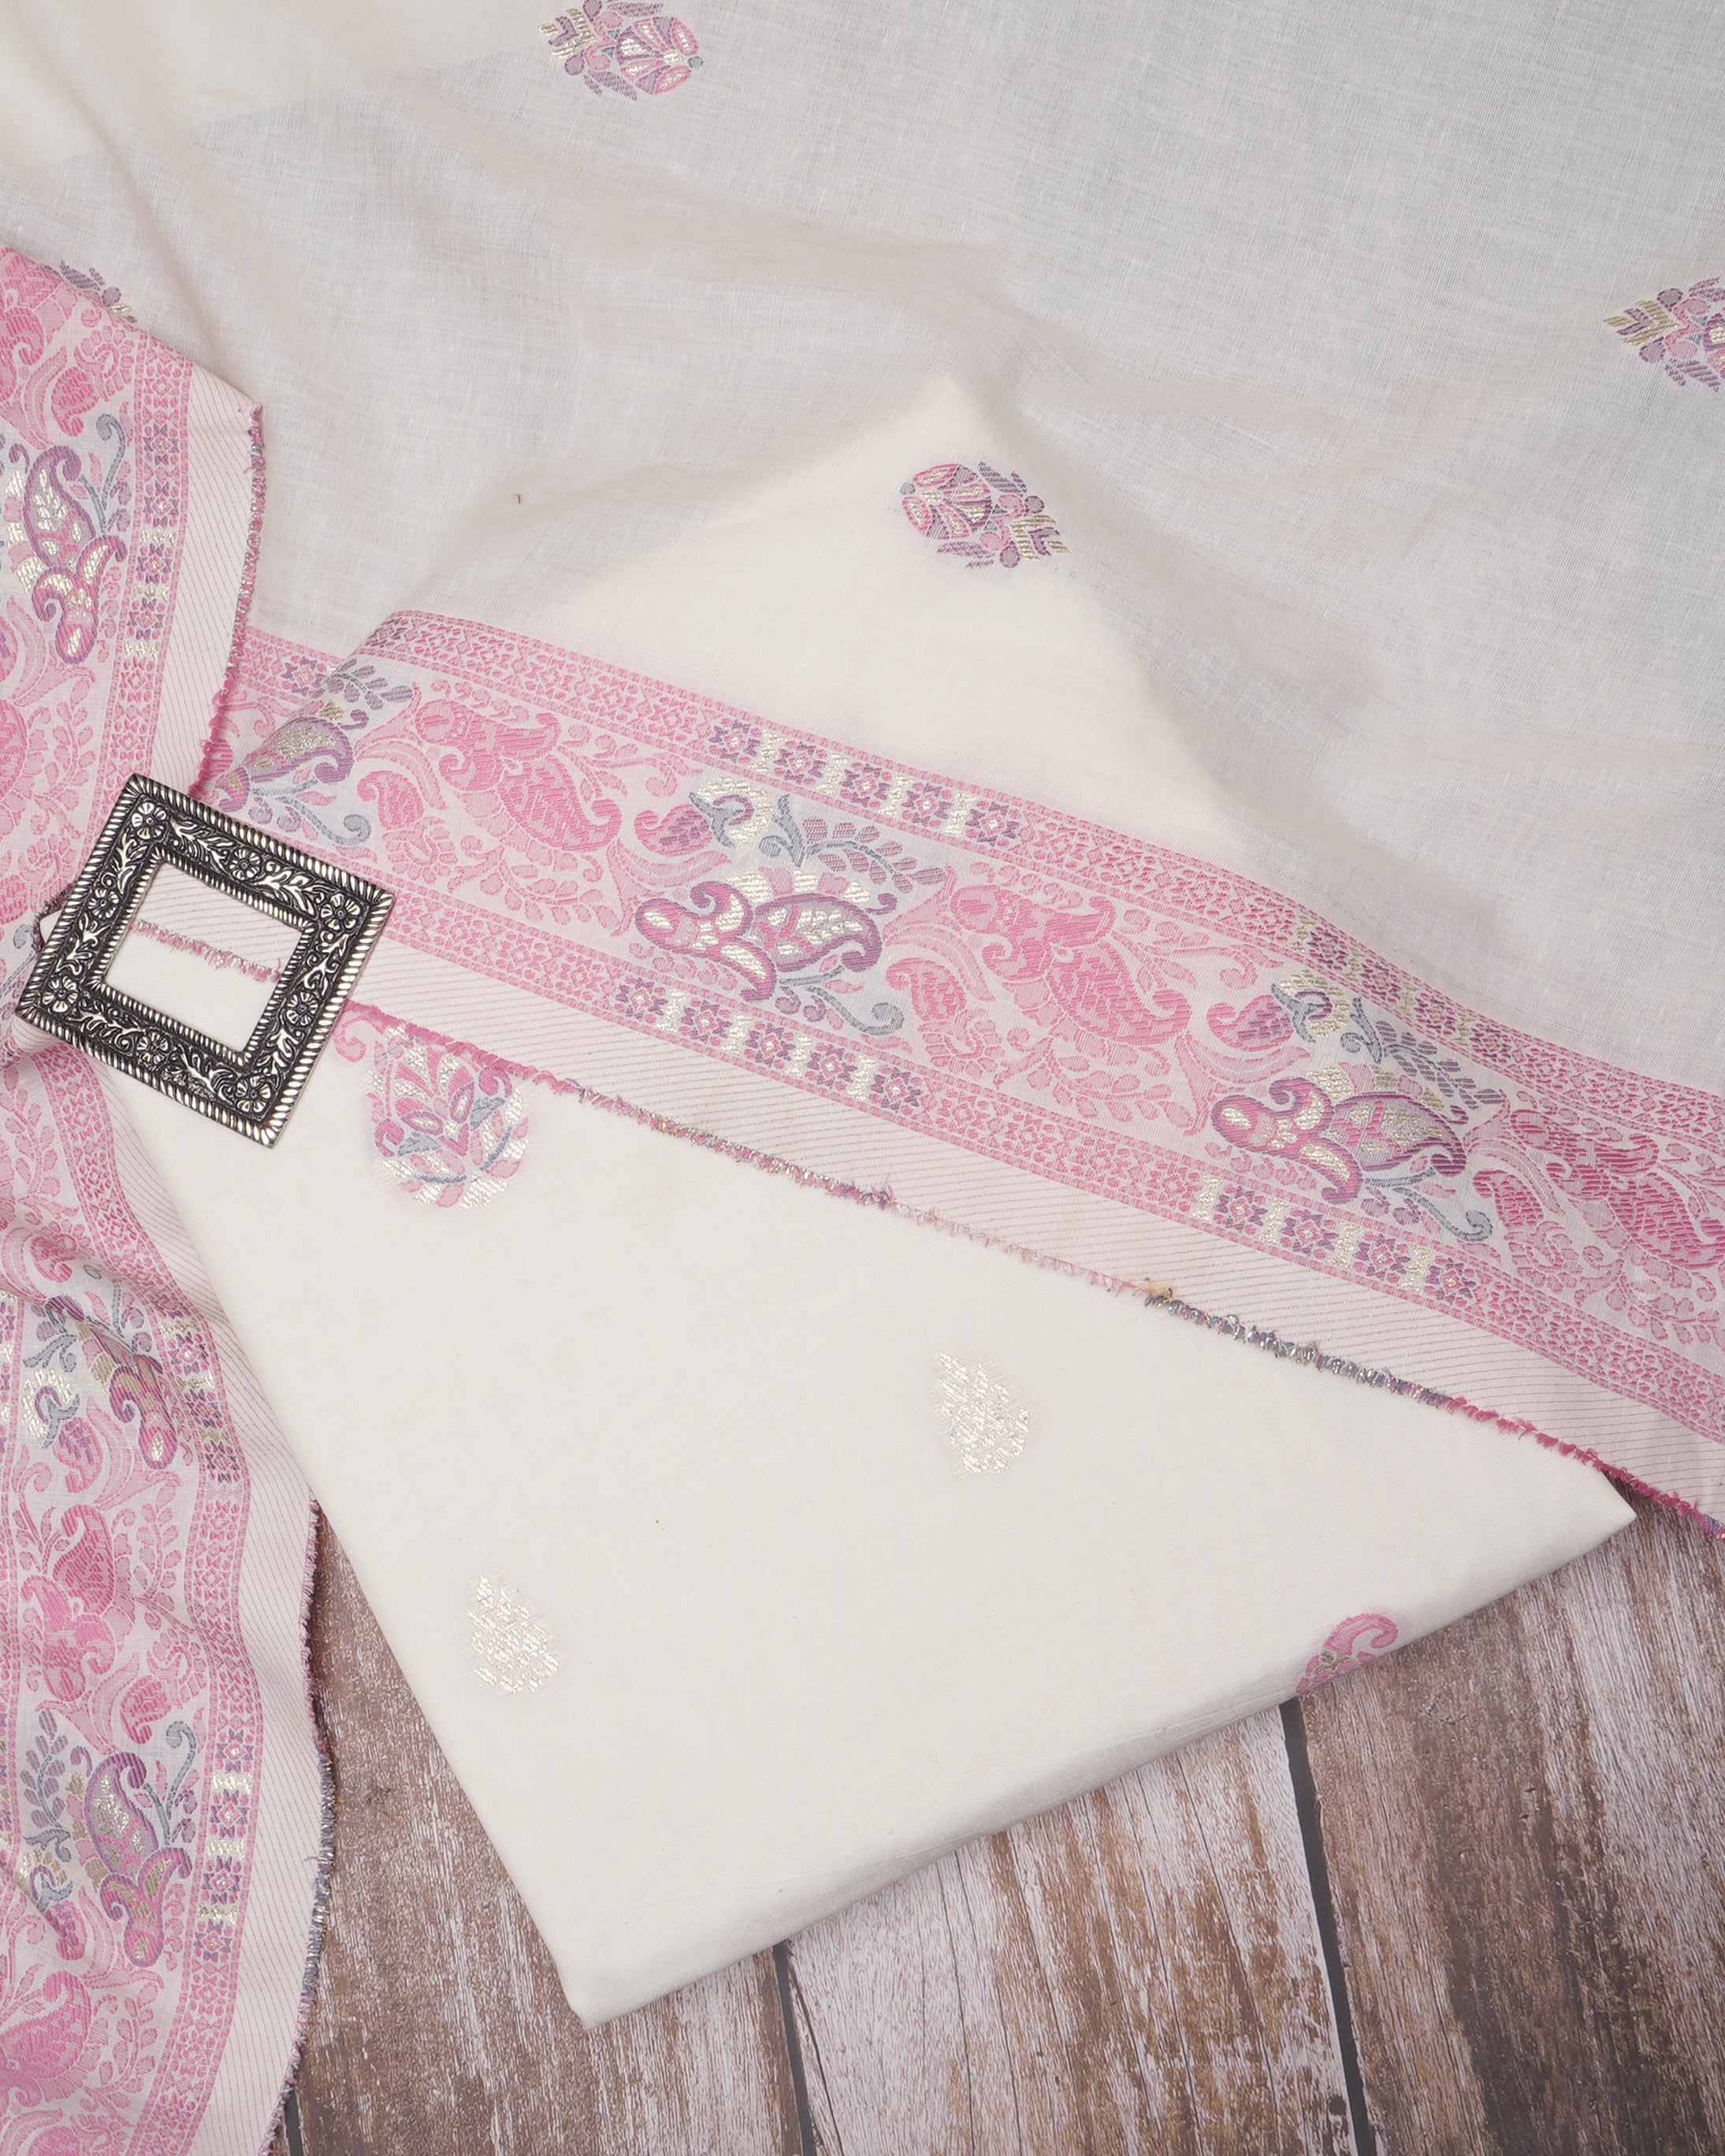 Off White-Pink Floral Pattern Fancy Woven Fancy Cotton Unstitched Suit Set (Top & Dupatta)